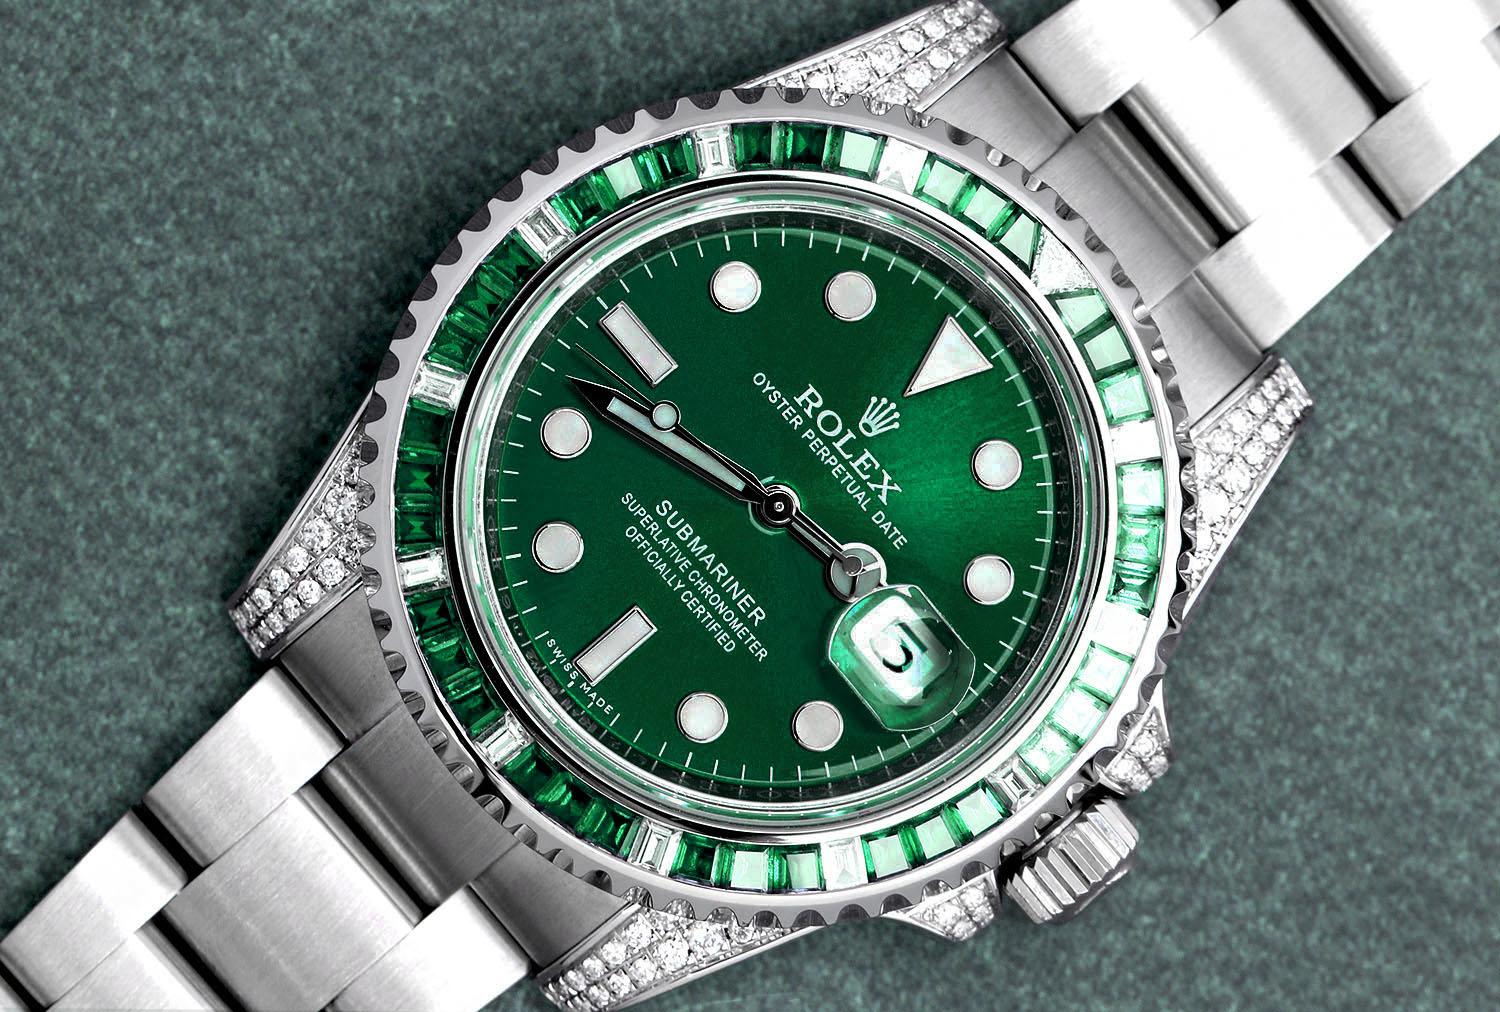 Rolex Submariner Datum benutzerdefinierte Diamant-Edelstahl-Uhr mit Smaragden/Diamanten Lünette Laschen und grünes Zifferblatt 116610. Die Uhr wurde professionell poliert und wurde nach der Anpassung nie getragen. Es gibt absolut KEINE sichtbaren